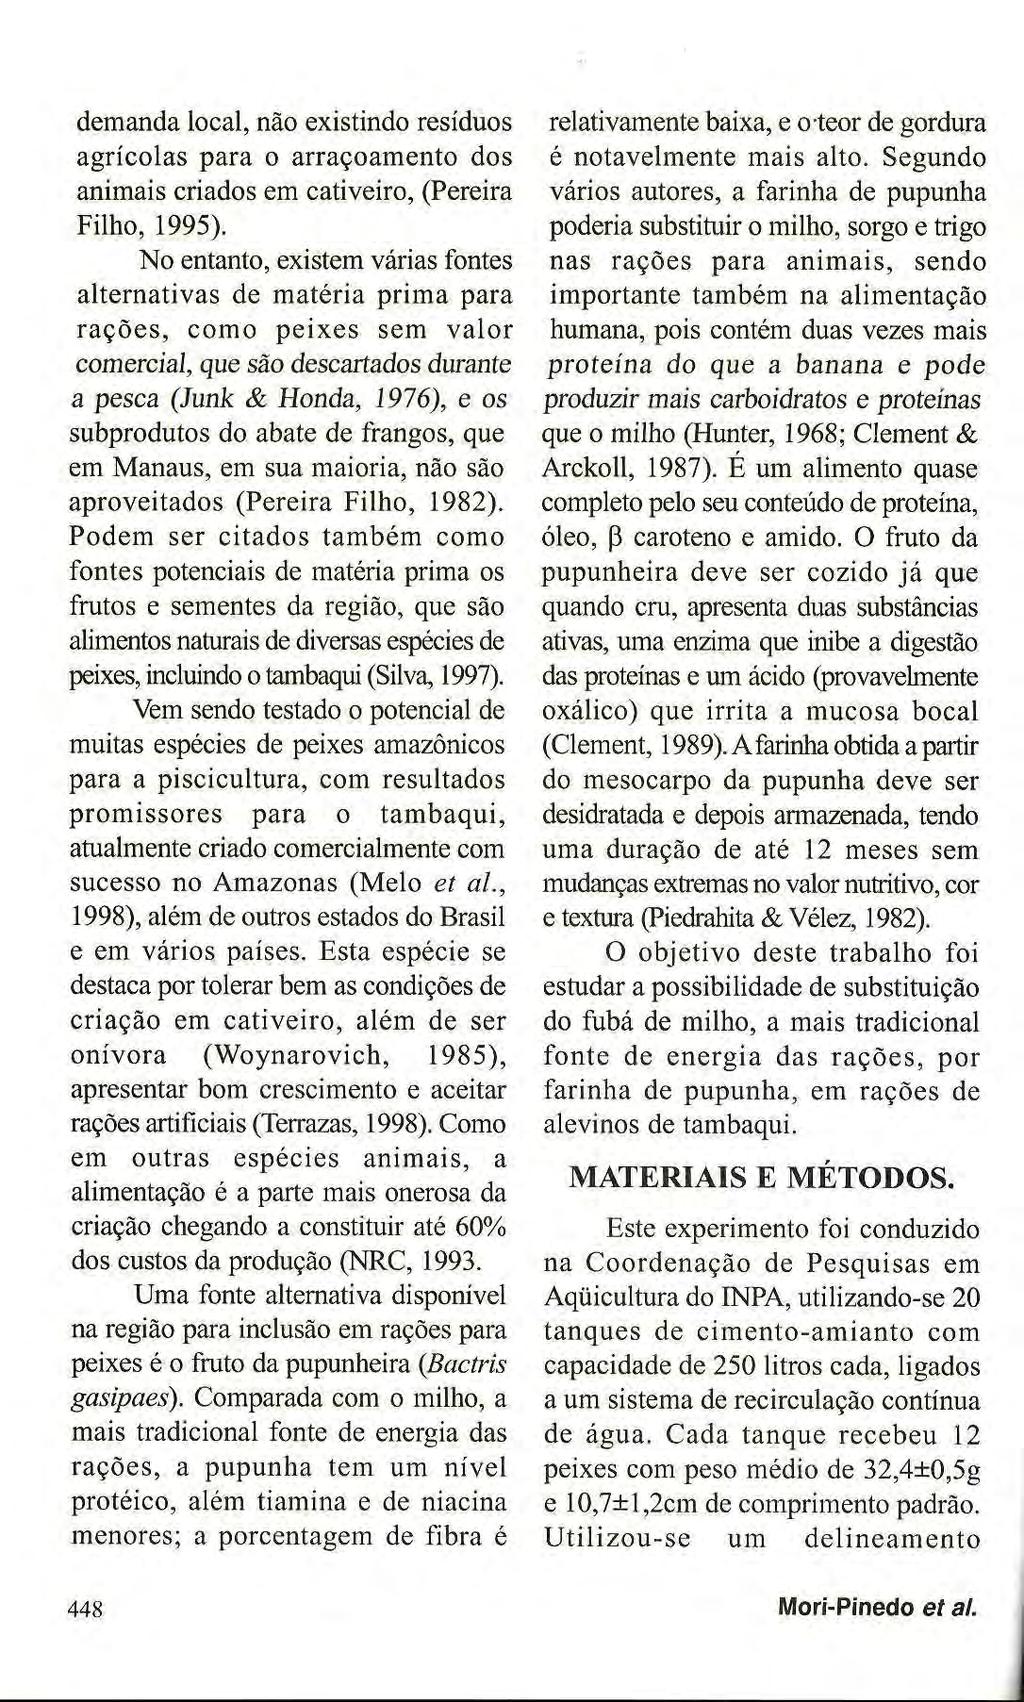 demanda local, não existindo resíduos agrícolas para o arraçoamento dos animais criados em cativeiro, (Pereira Filho, 1995).